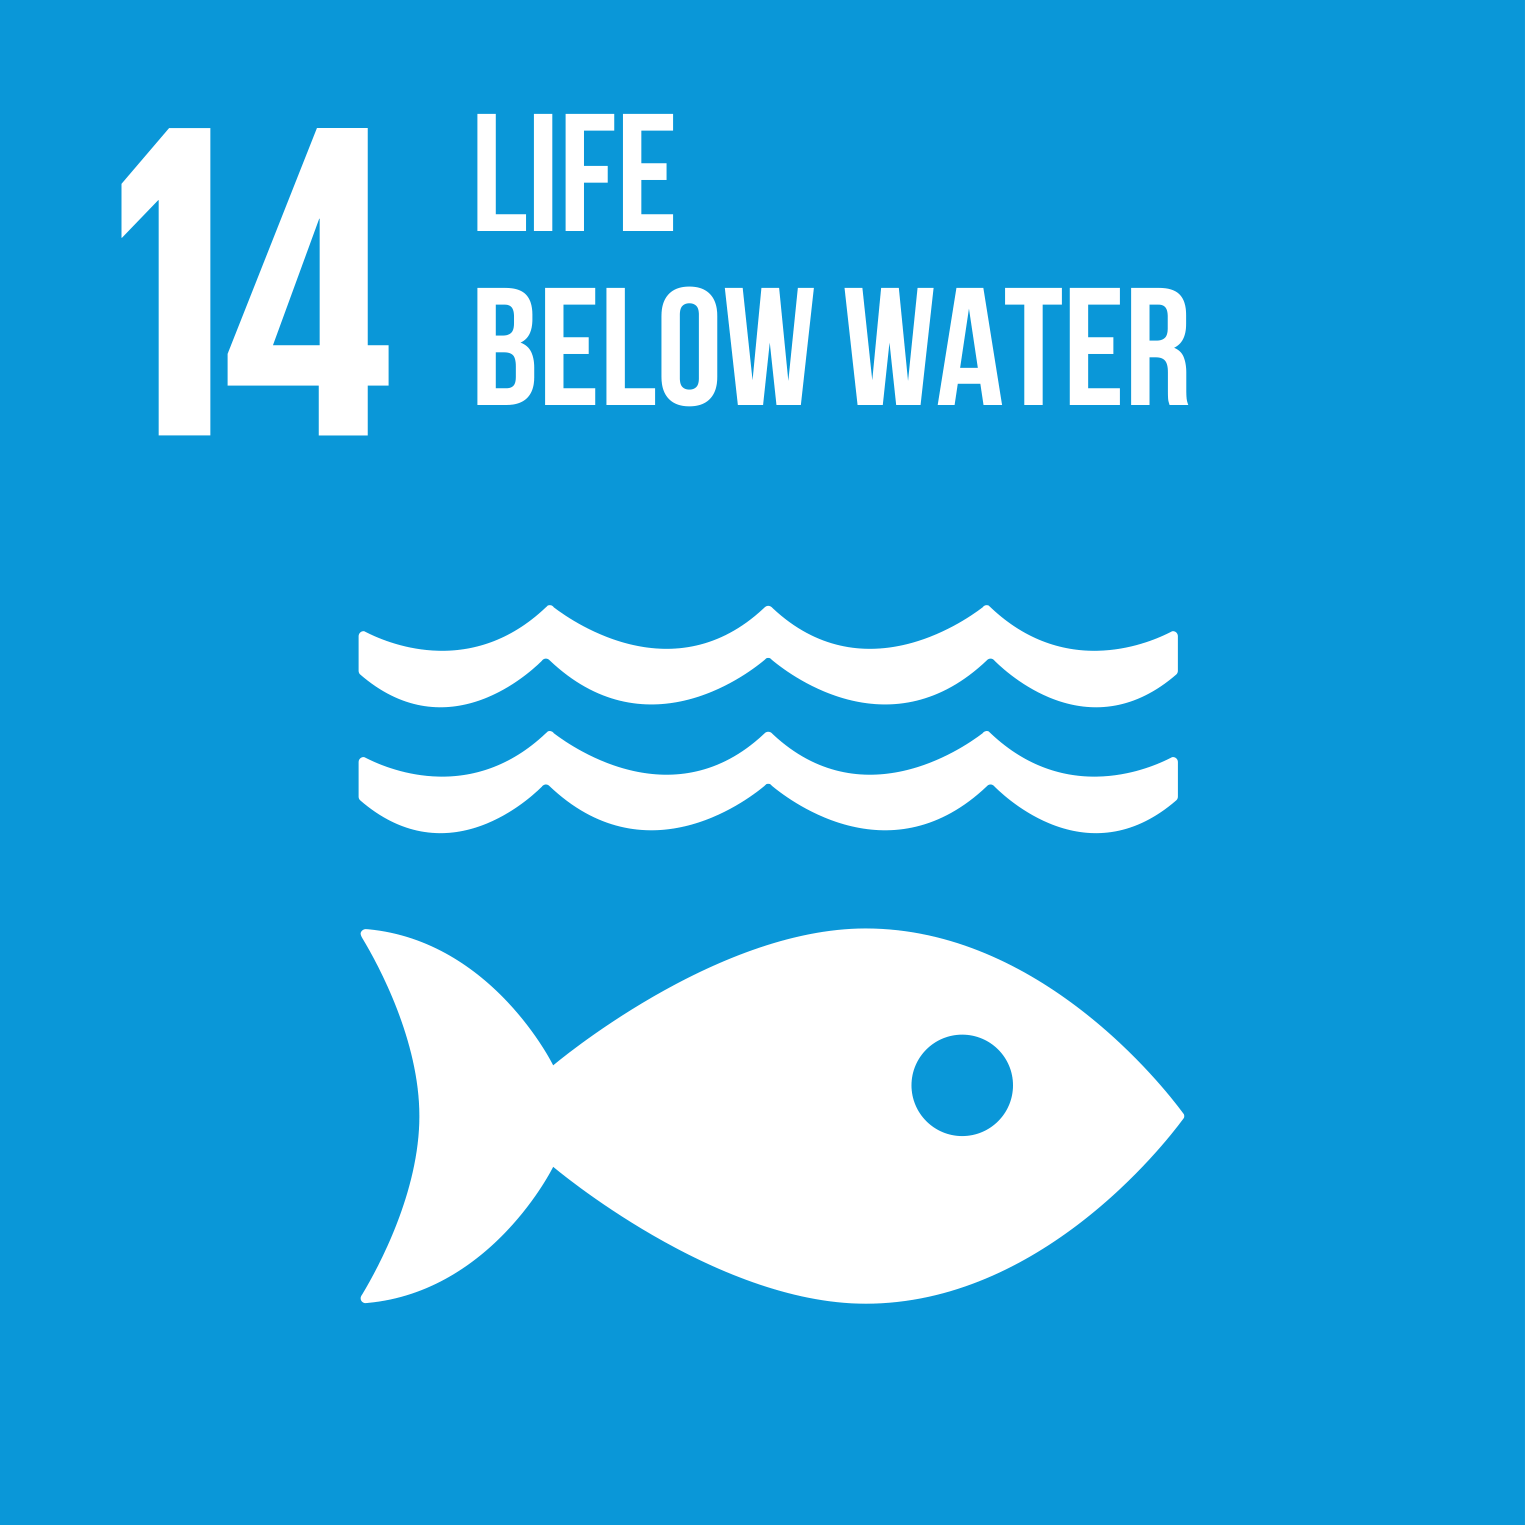 【SDG 14】Life Below Water